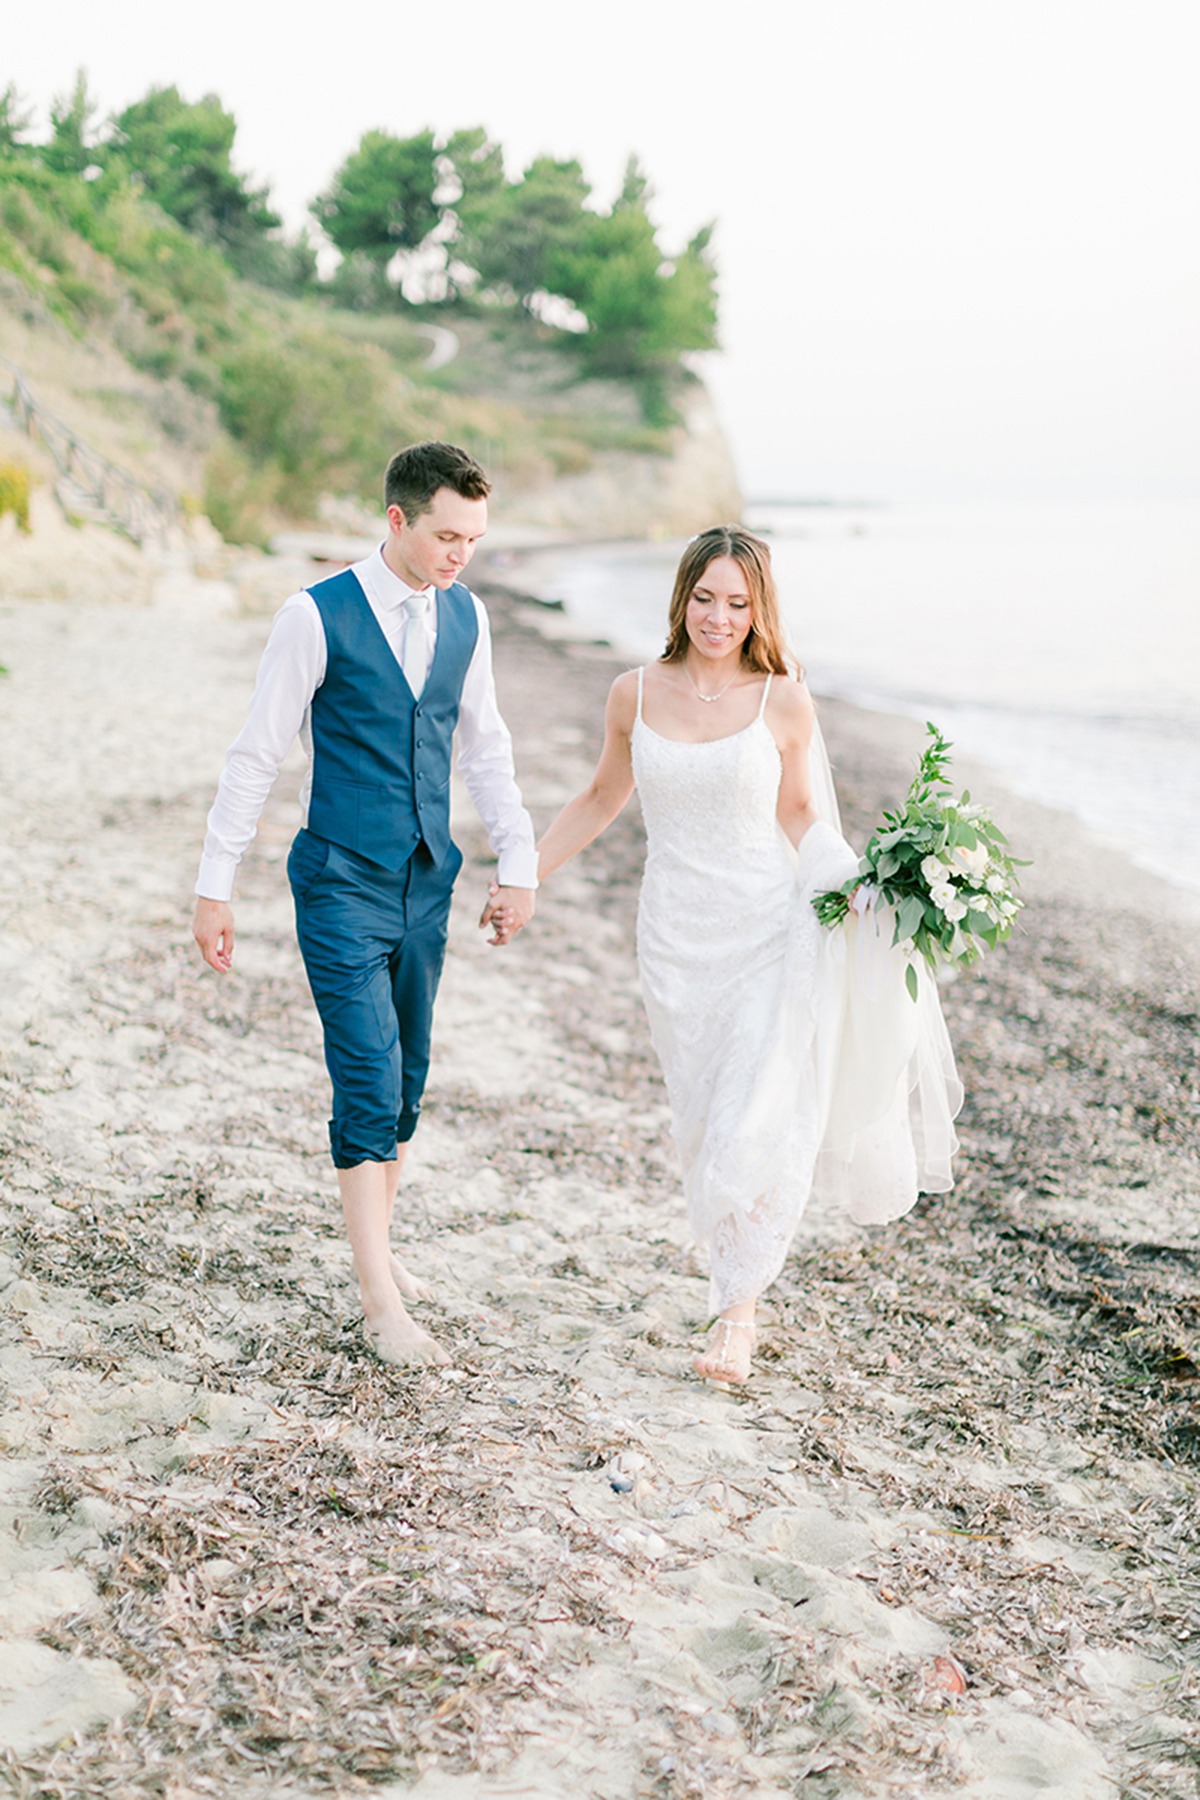 Seaside wedding in Greece